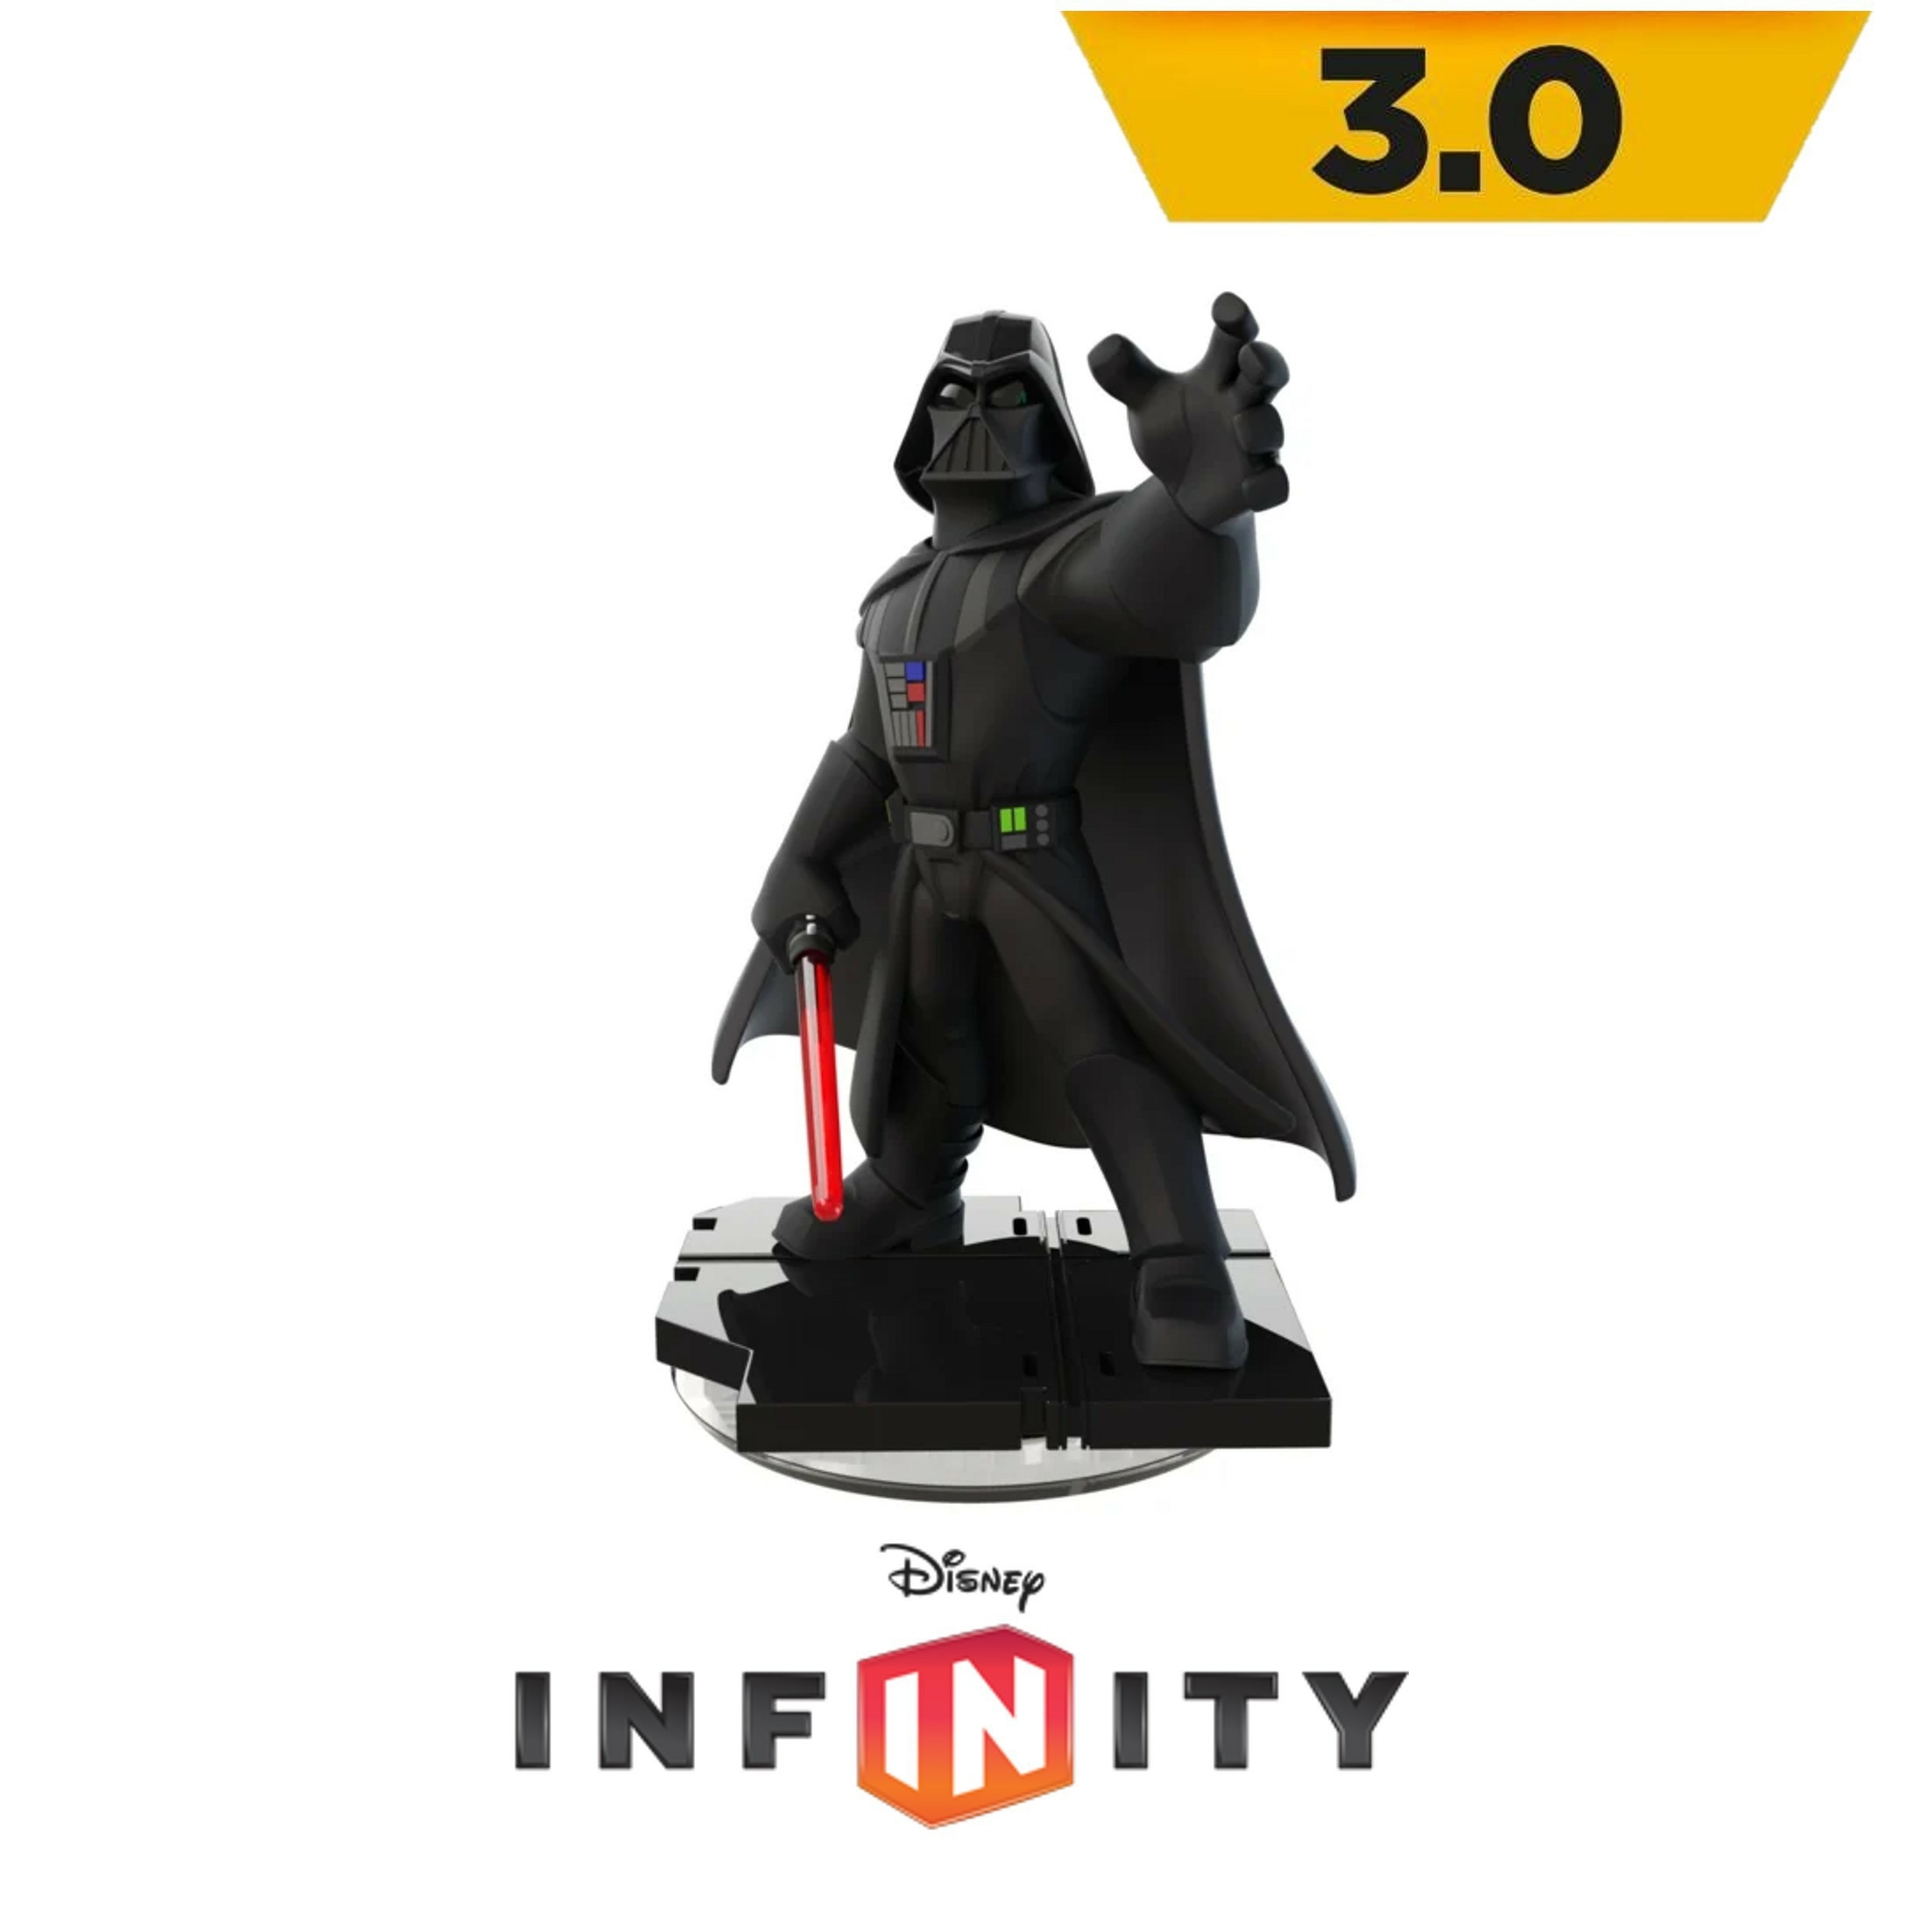 Disney Infinity - Darth Vader - Playstation 3 Hardware